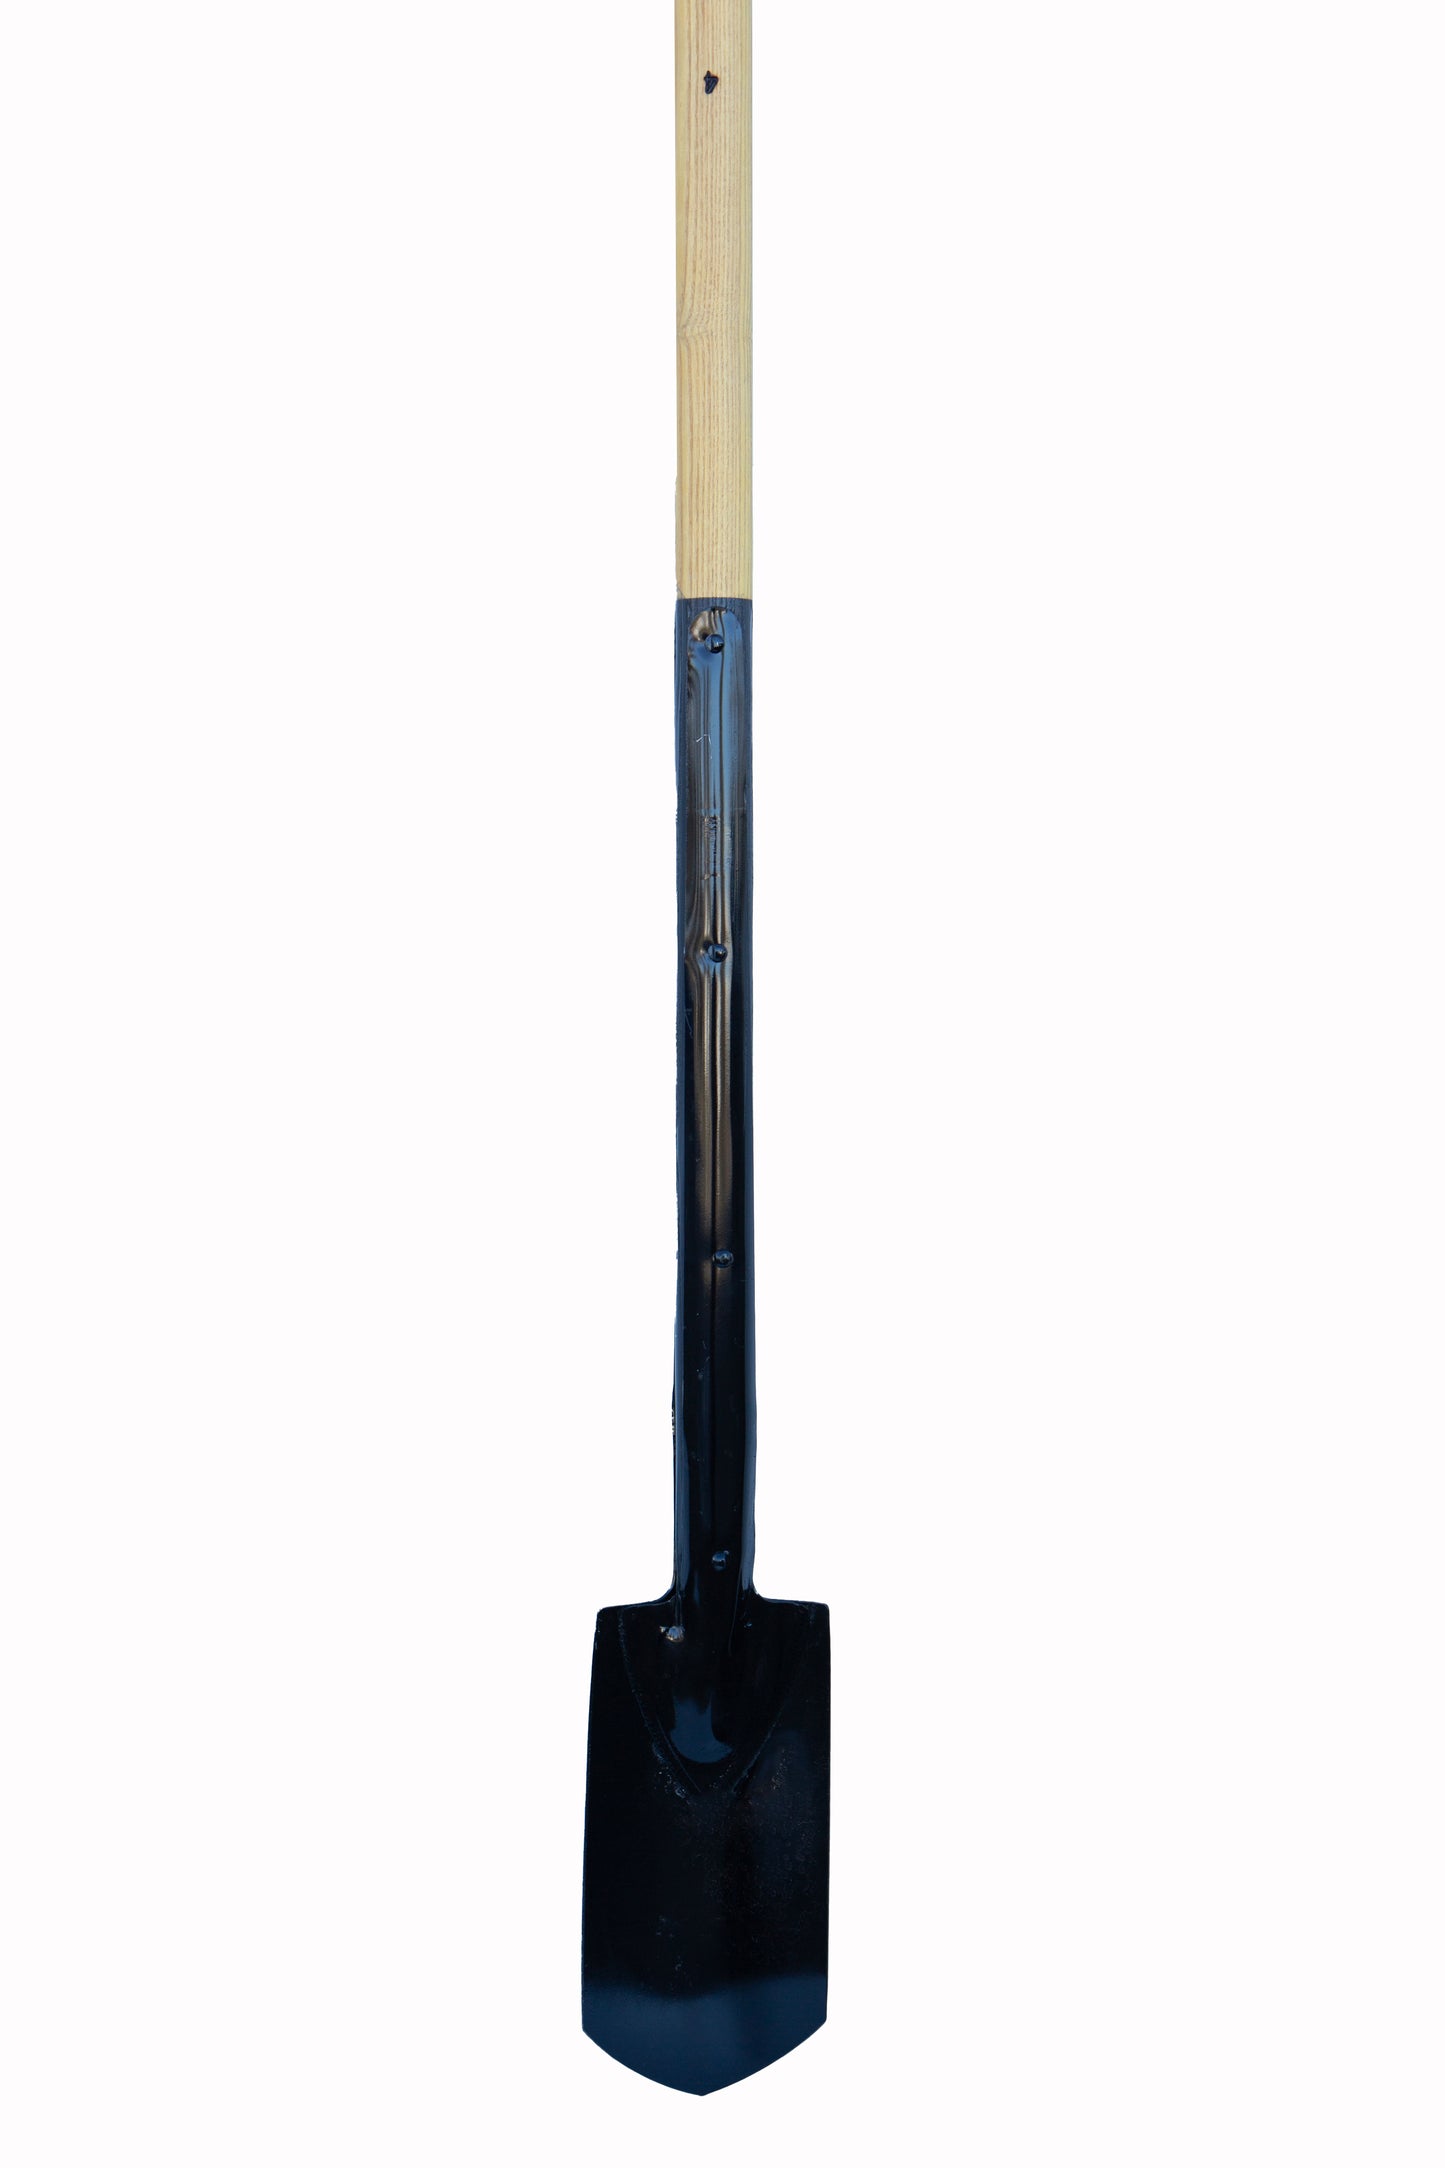 Oshkosh Tools 10 inch straight shovel blade